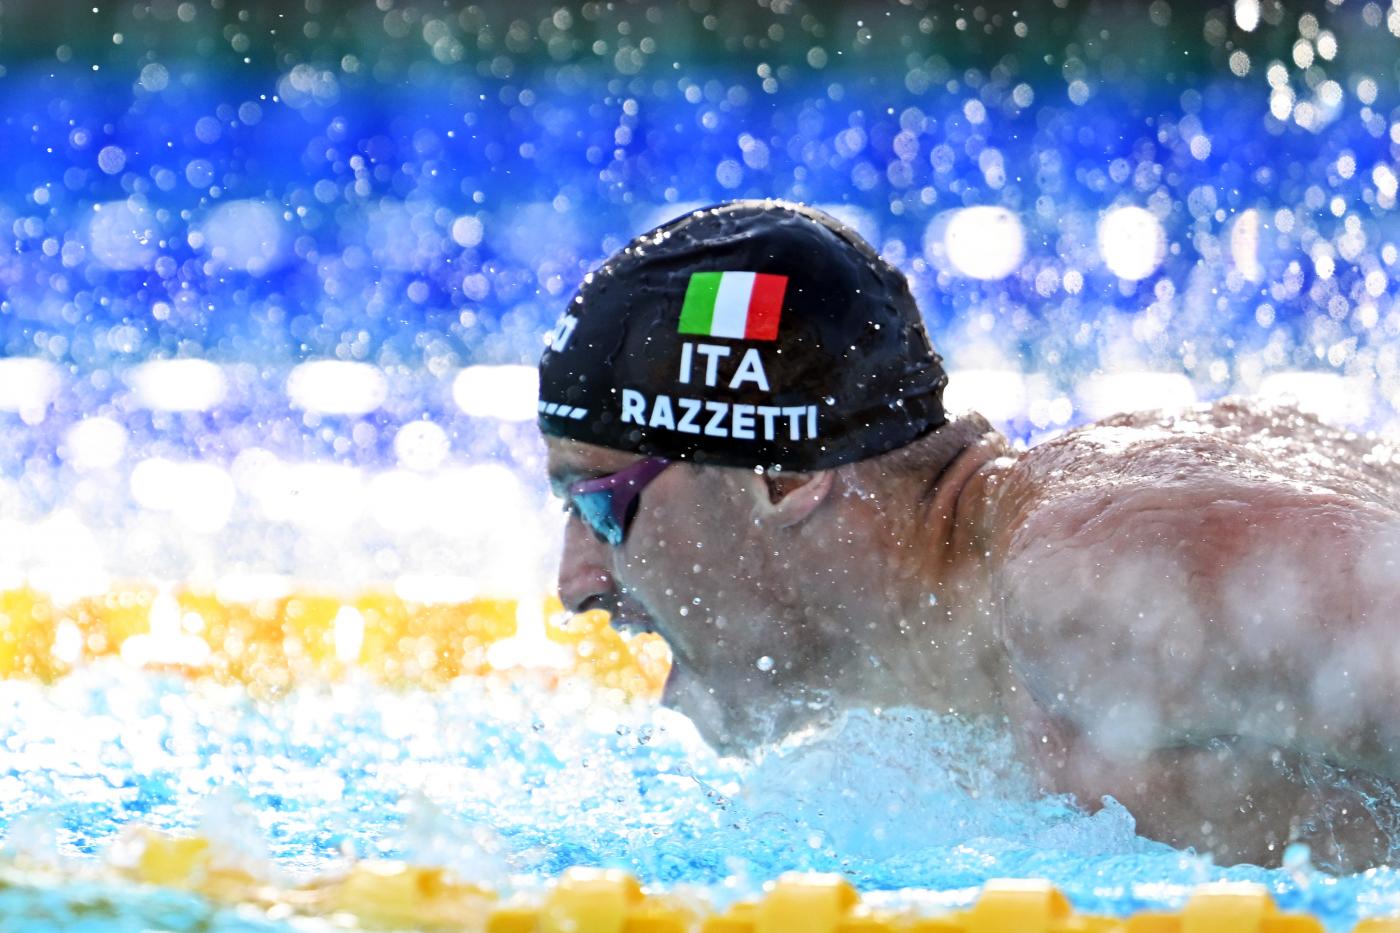 Nuoto, Alberto Razzetti: “Voglio il record italiano dei 400 misti, punto a migliorarmi nei Mondiali”